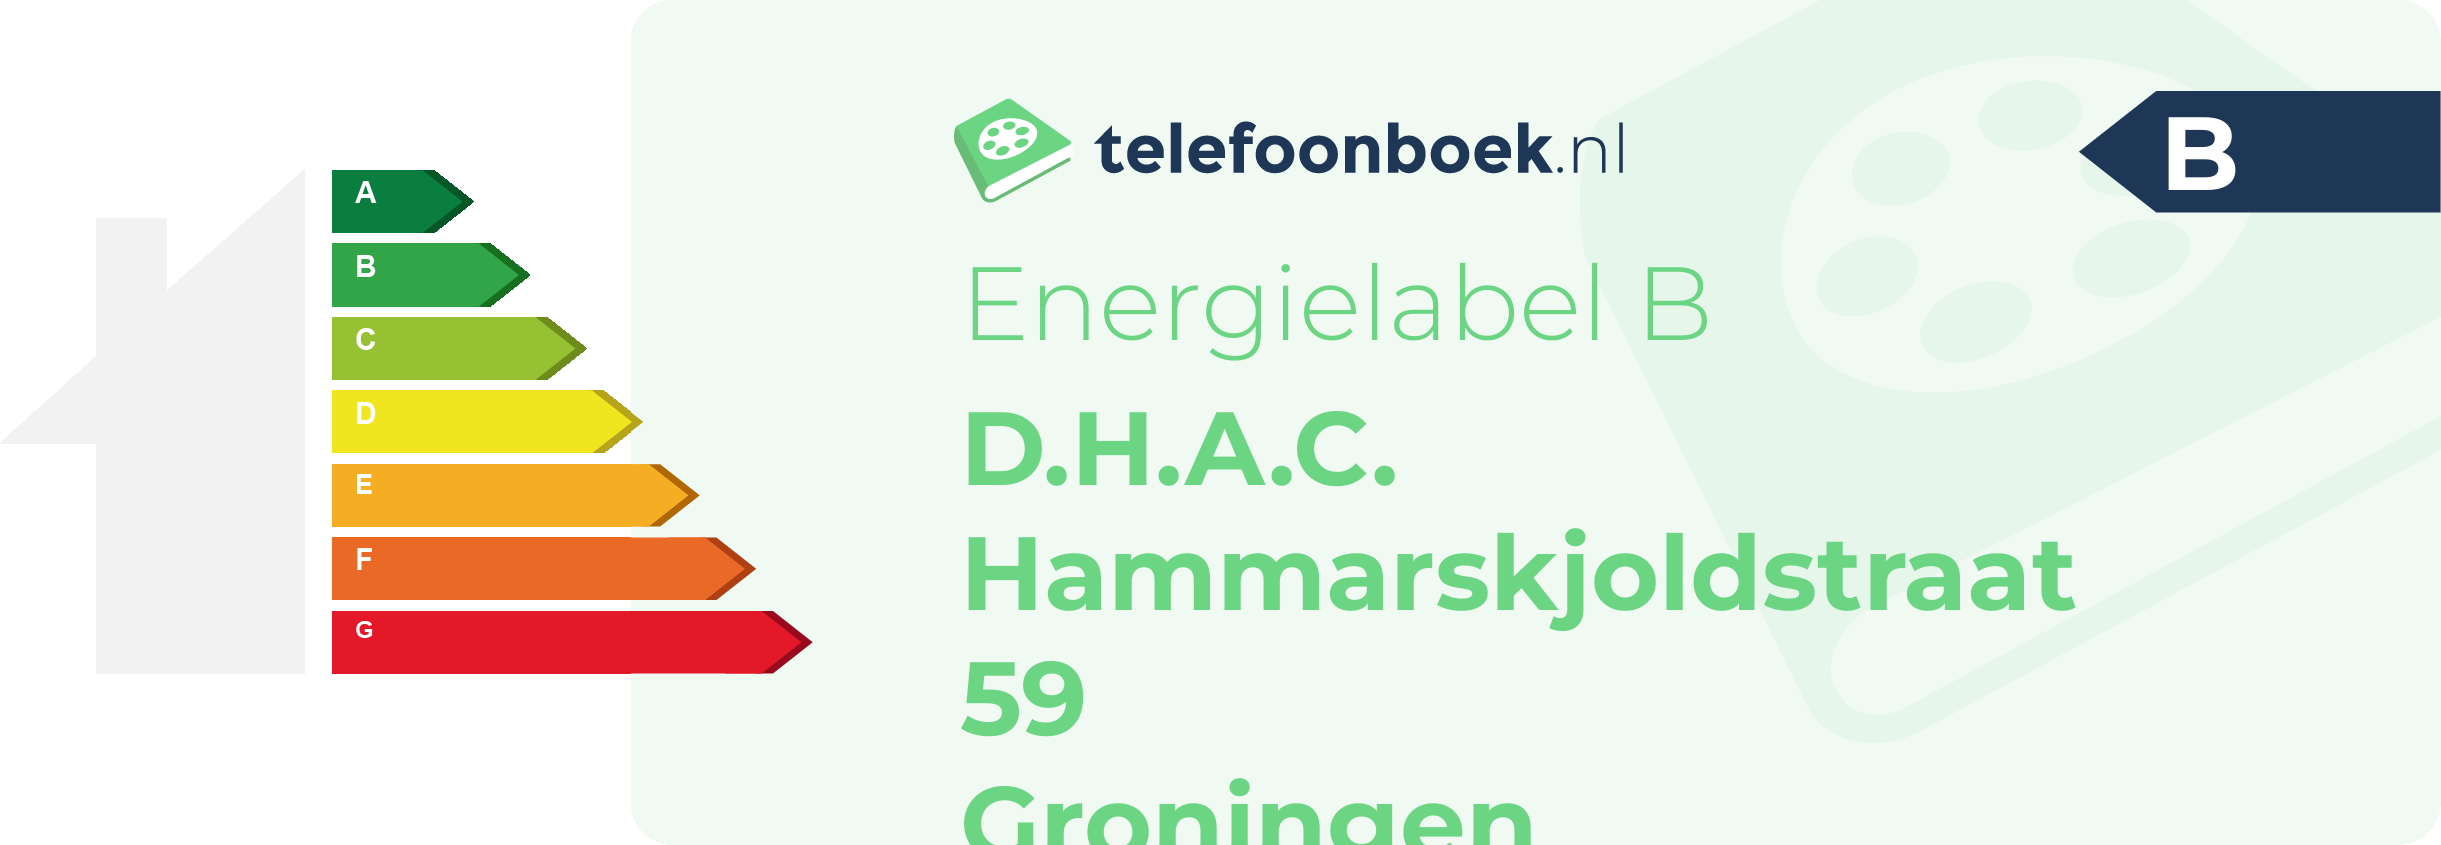 Energielabel D.H.A.C. Hammarskjoldstraat 59 Groningen